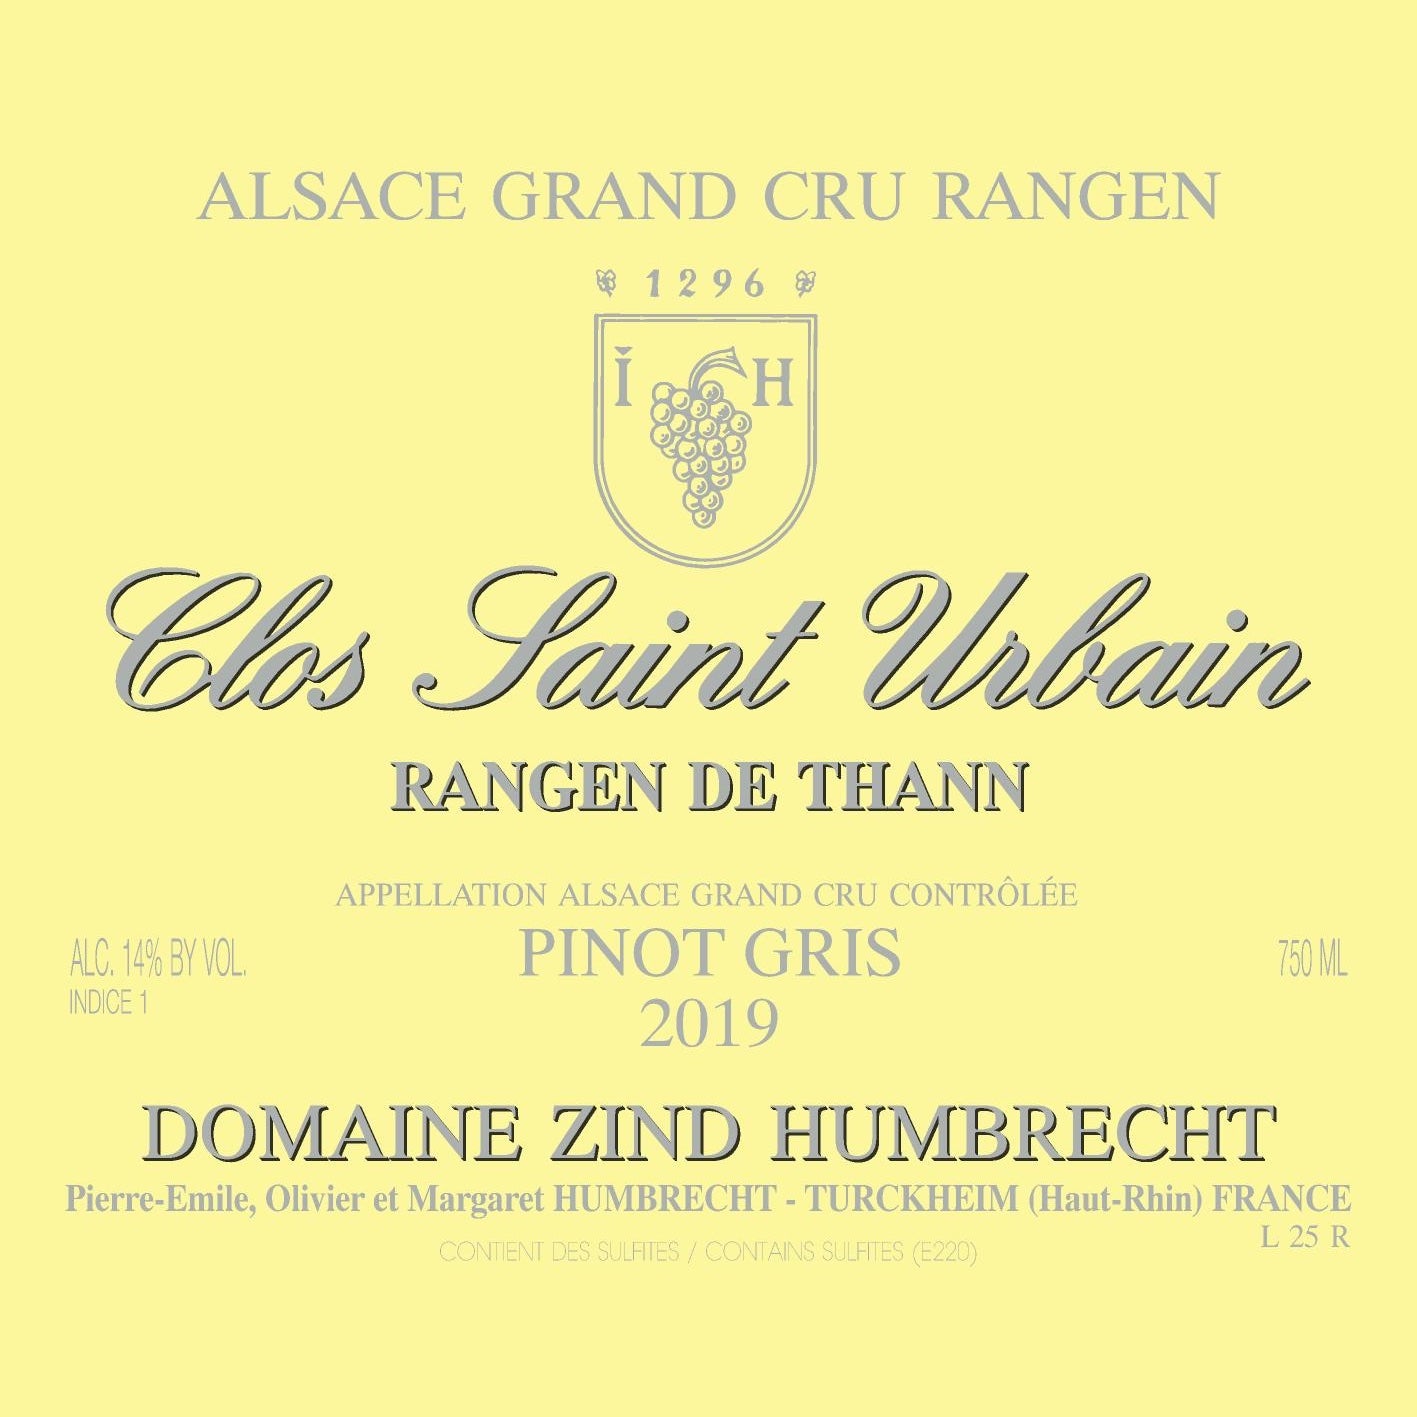 Zind-Humbrecht Pinot Gris Rangen de Thann Clos Saint Urbain 2019